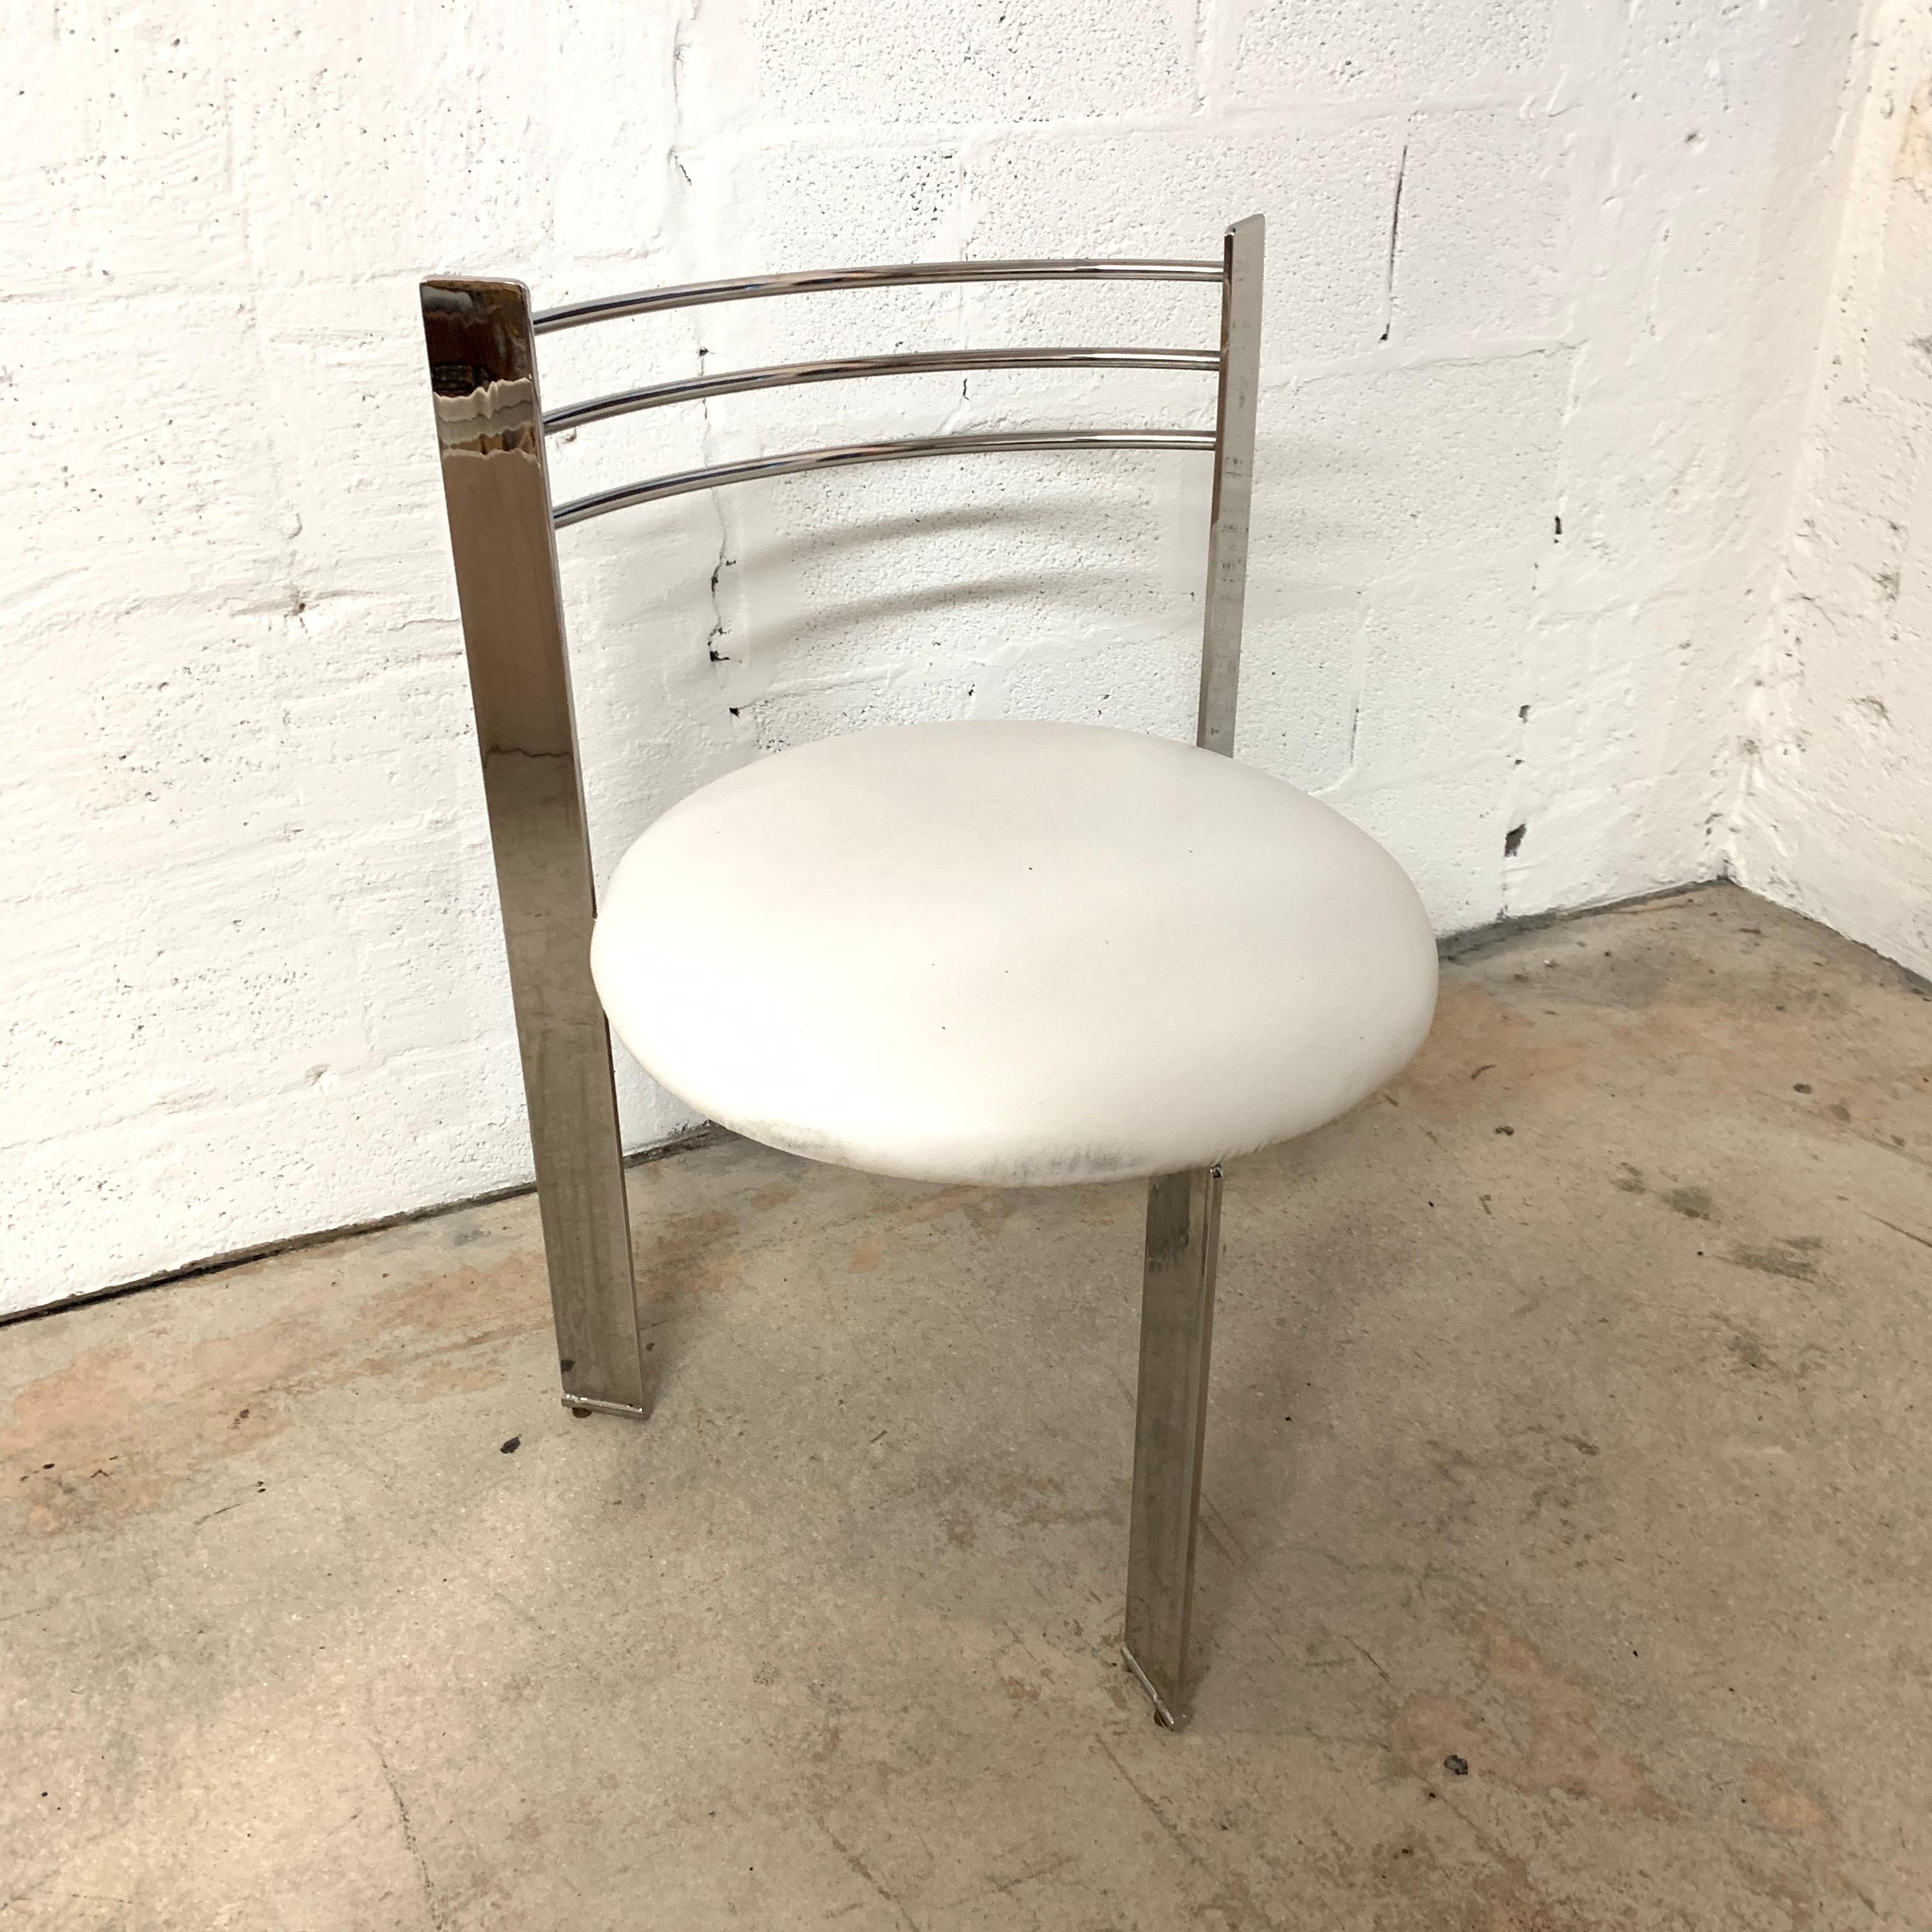 Einzigartiger Stuhl, bestehend aus 3 Beinen mit einem runden Vinylsitz, 1980er Jahre.